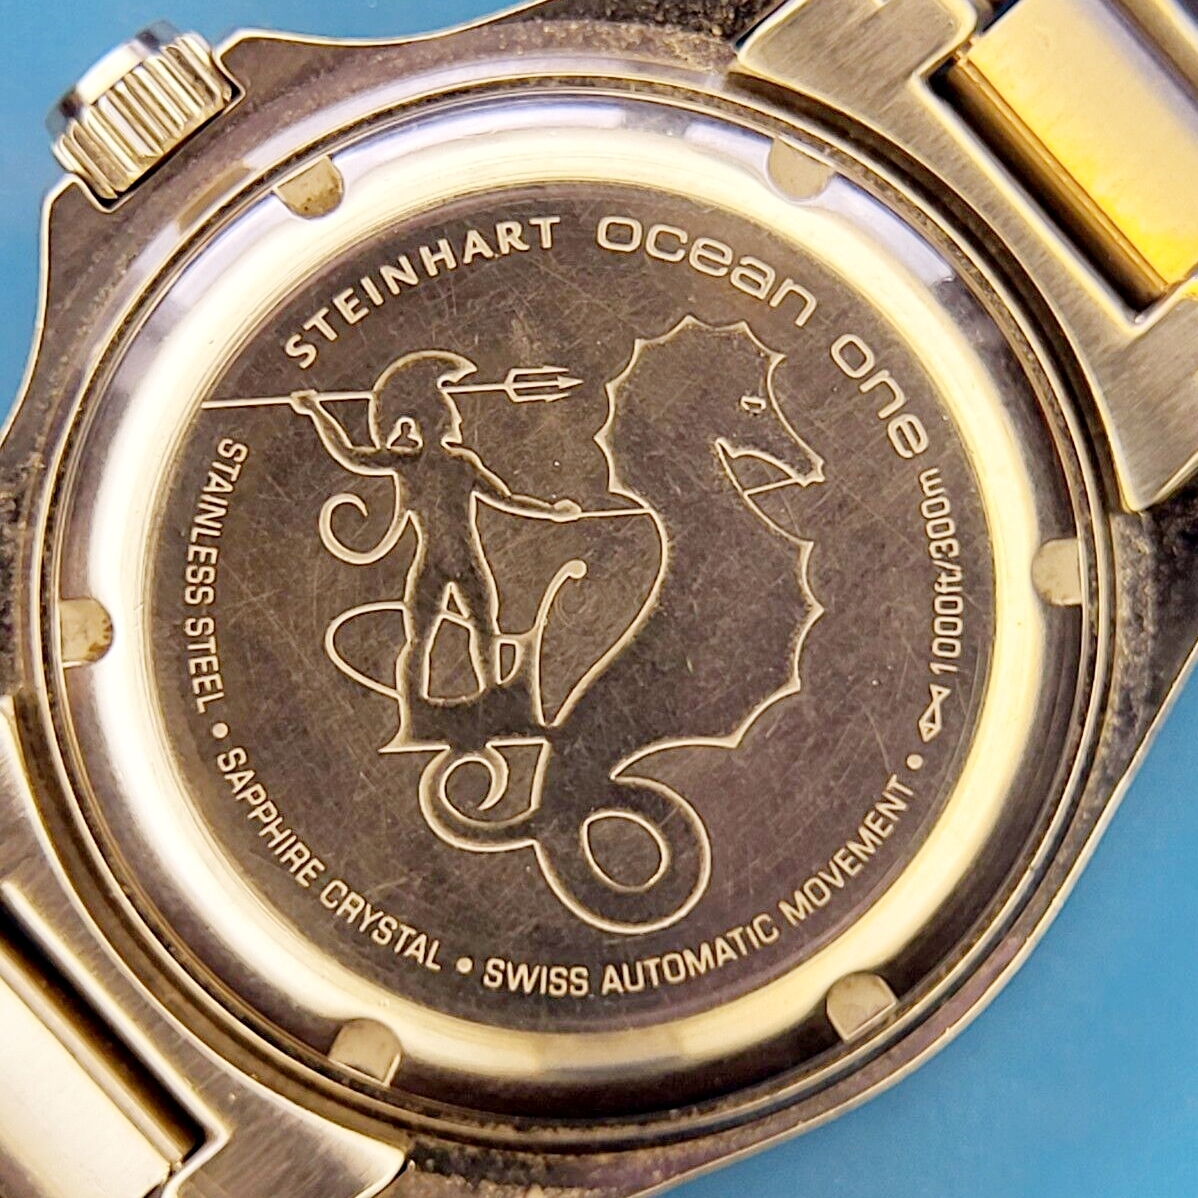 [ Германия проект Швейцария качество ]Steinhart Ocean One нагрудник n Heart мужские наручные часы Divers 42mm 300m водонепроницаемый ETA2824-2 40 час резерв мощности 